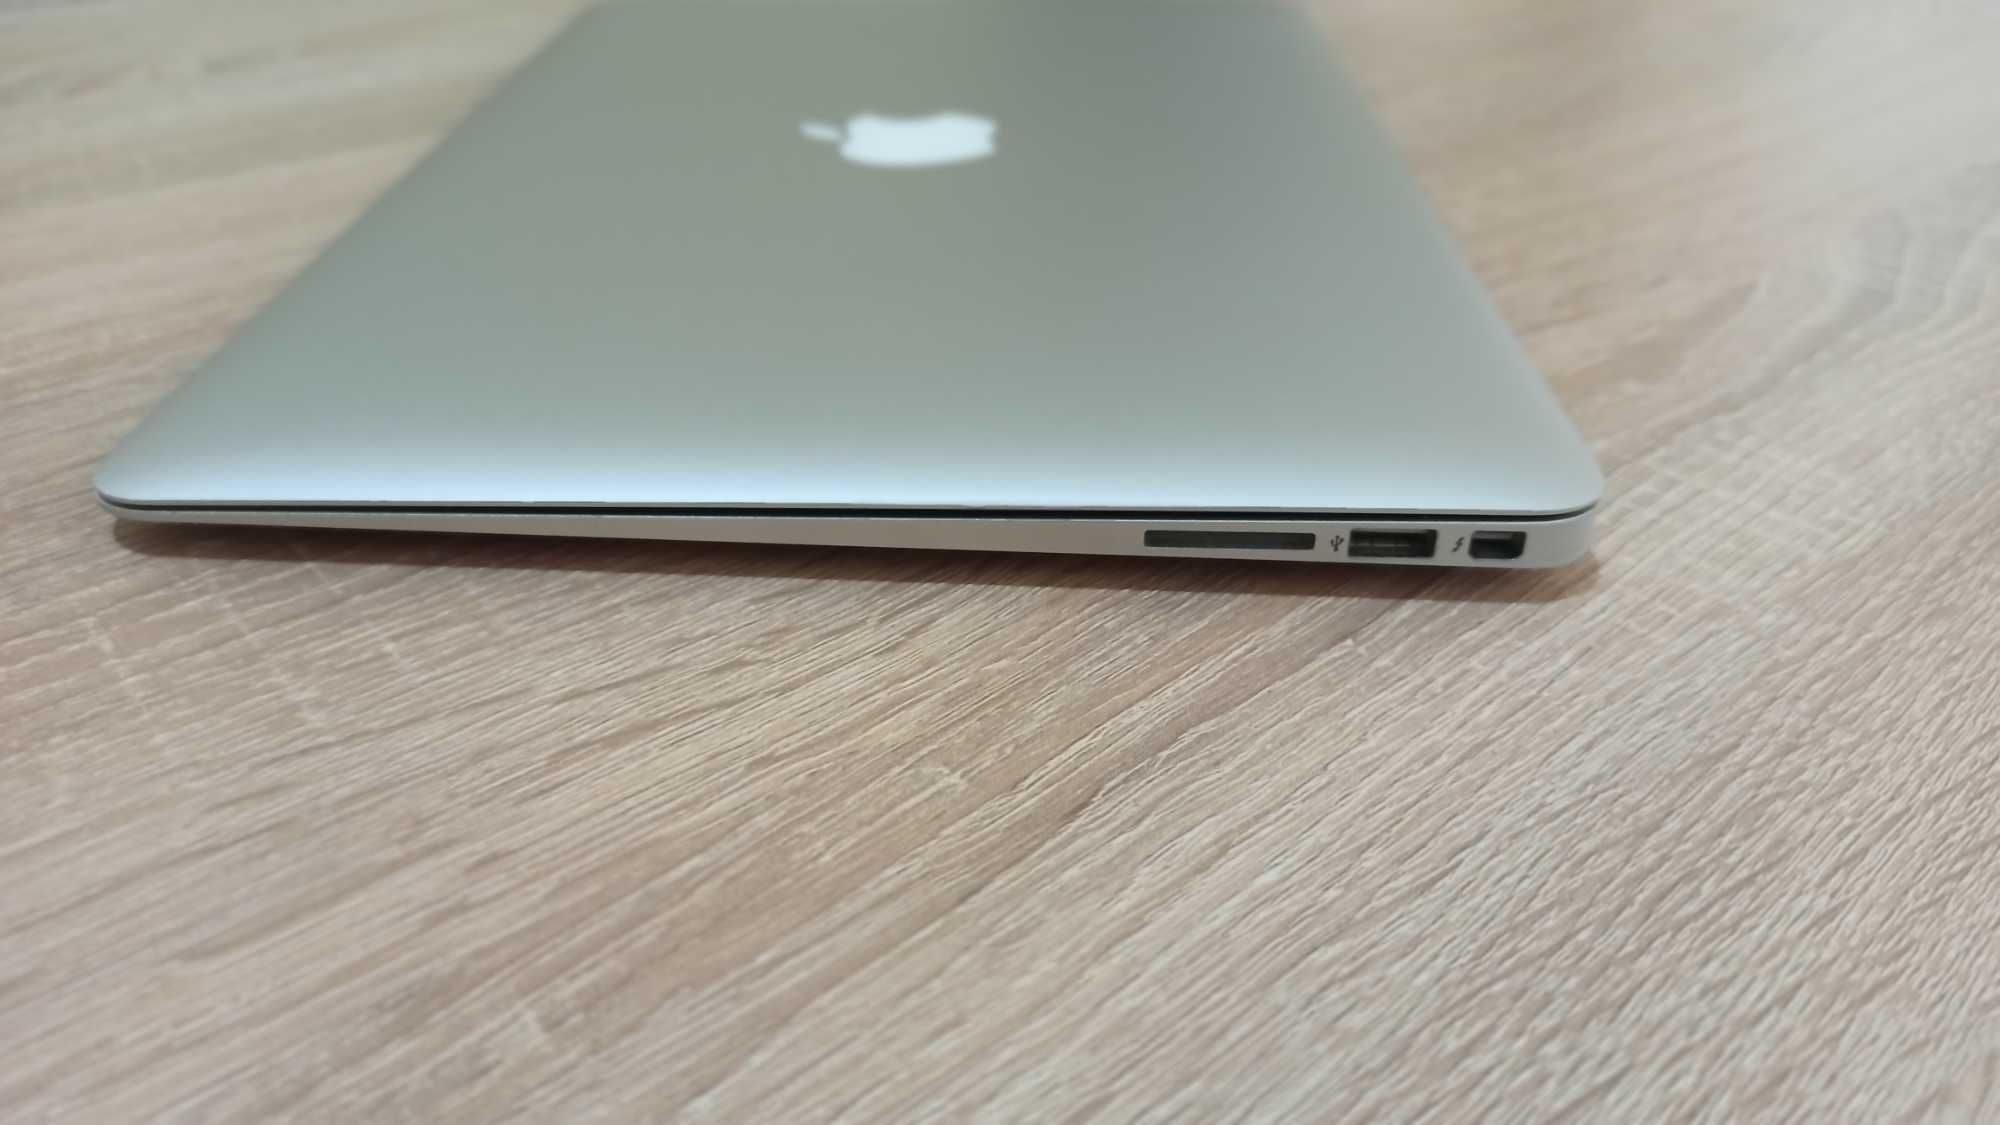 Apple MacBook Air - 13-inch/2017/Intel i5/8gb ram/128gb ssd/a1466